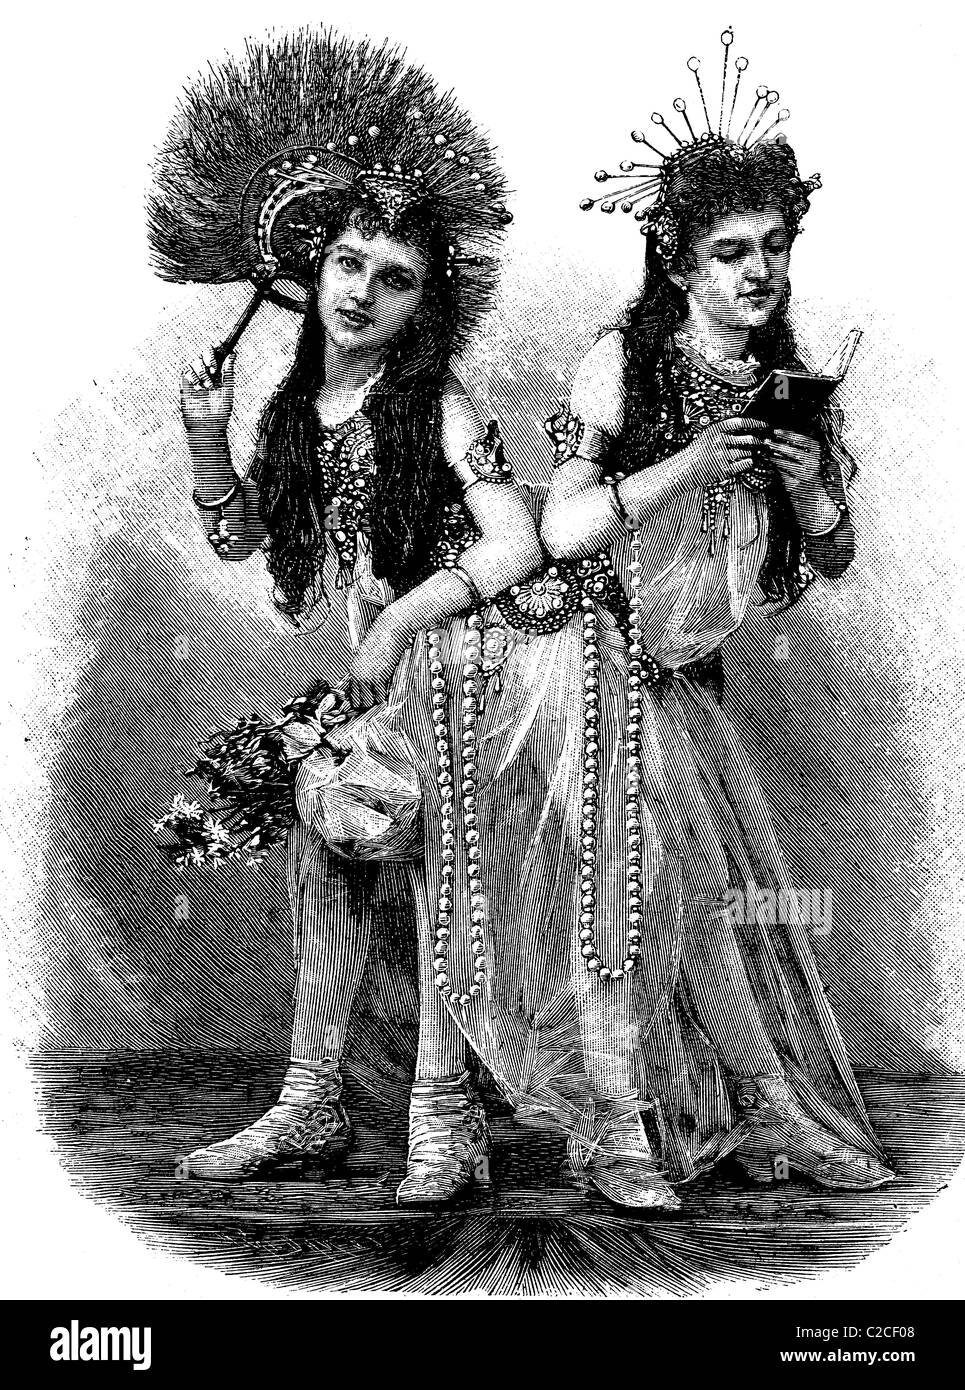 Jumeaux siamois, sœurs grandi ensemble, illustration historique vers 1893 Banque D'Images